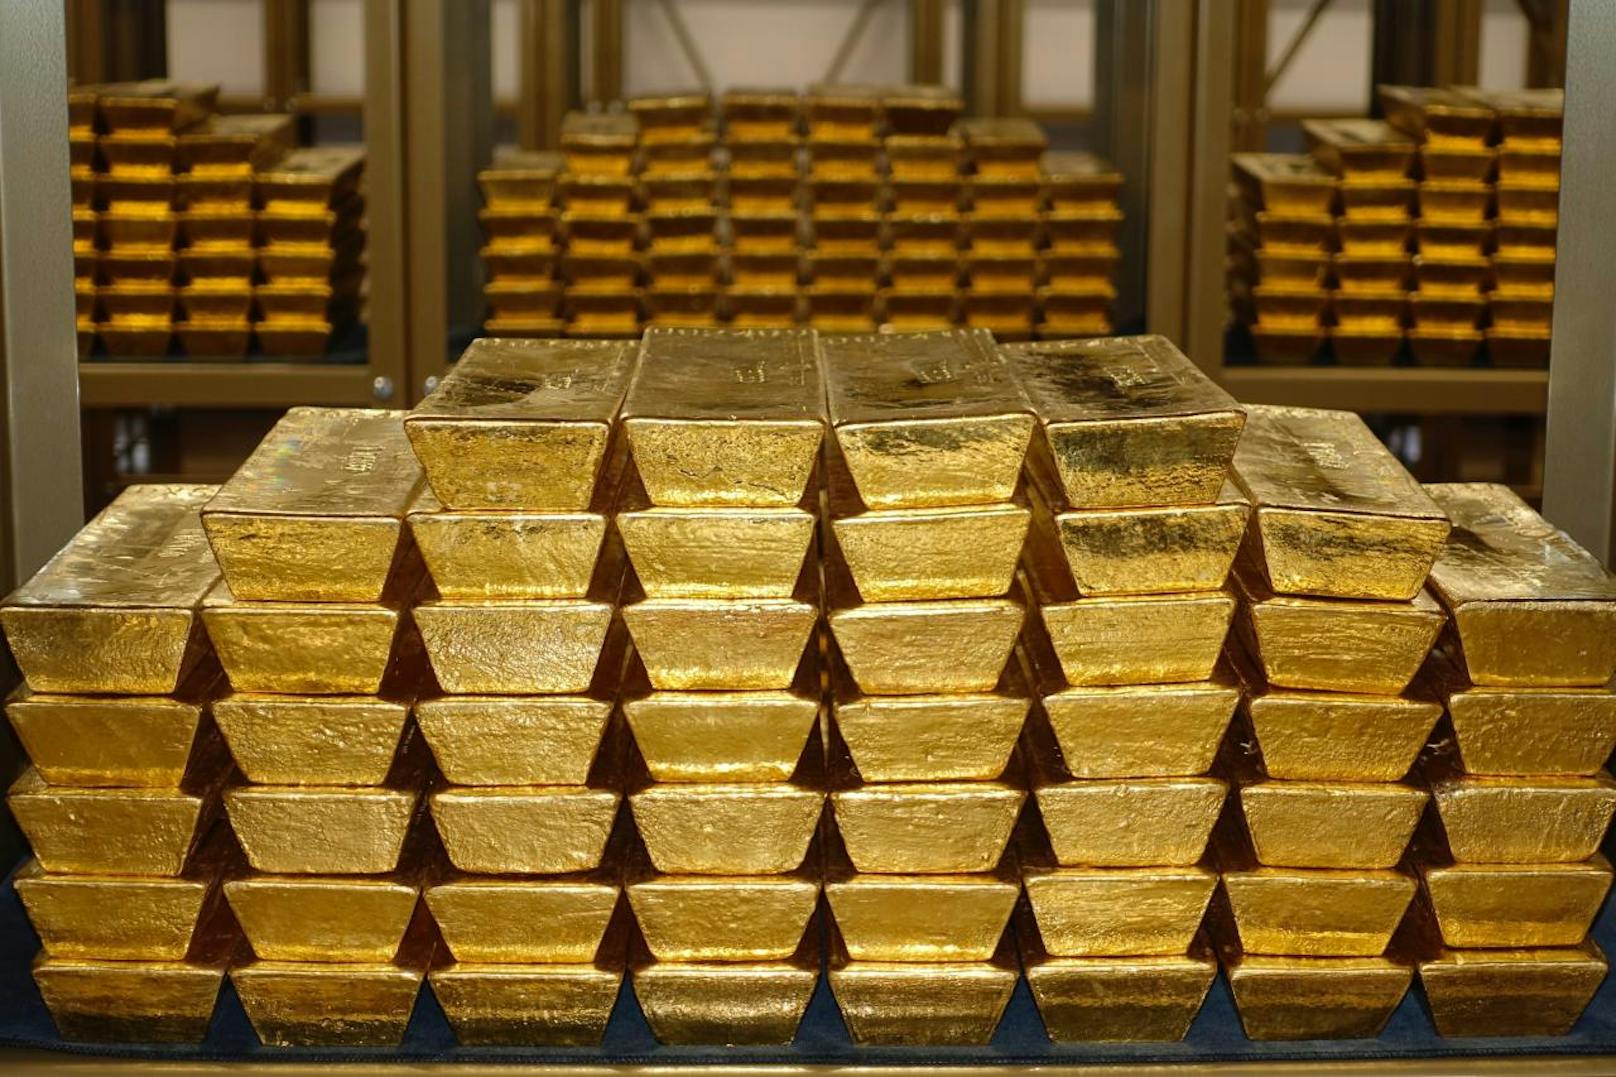 So sieht das Goldlager im Keller unter der Nationalbank in Wien aus.